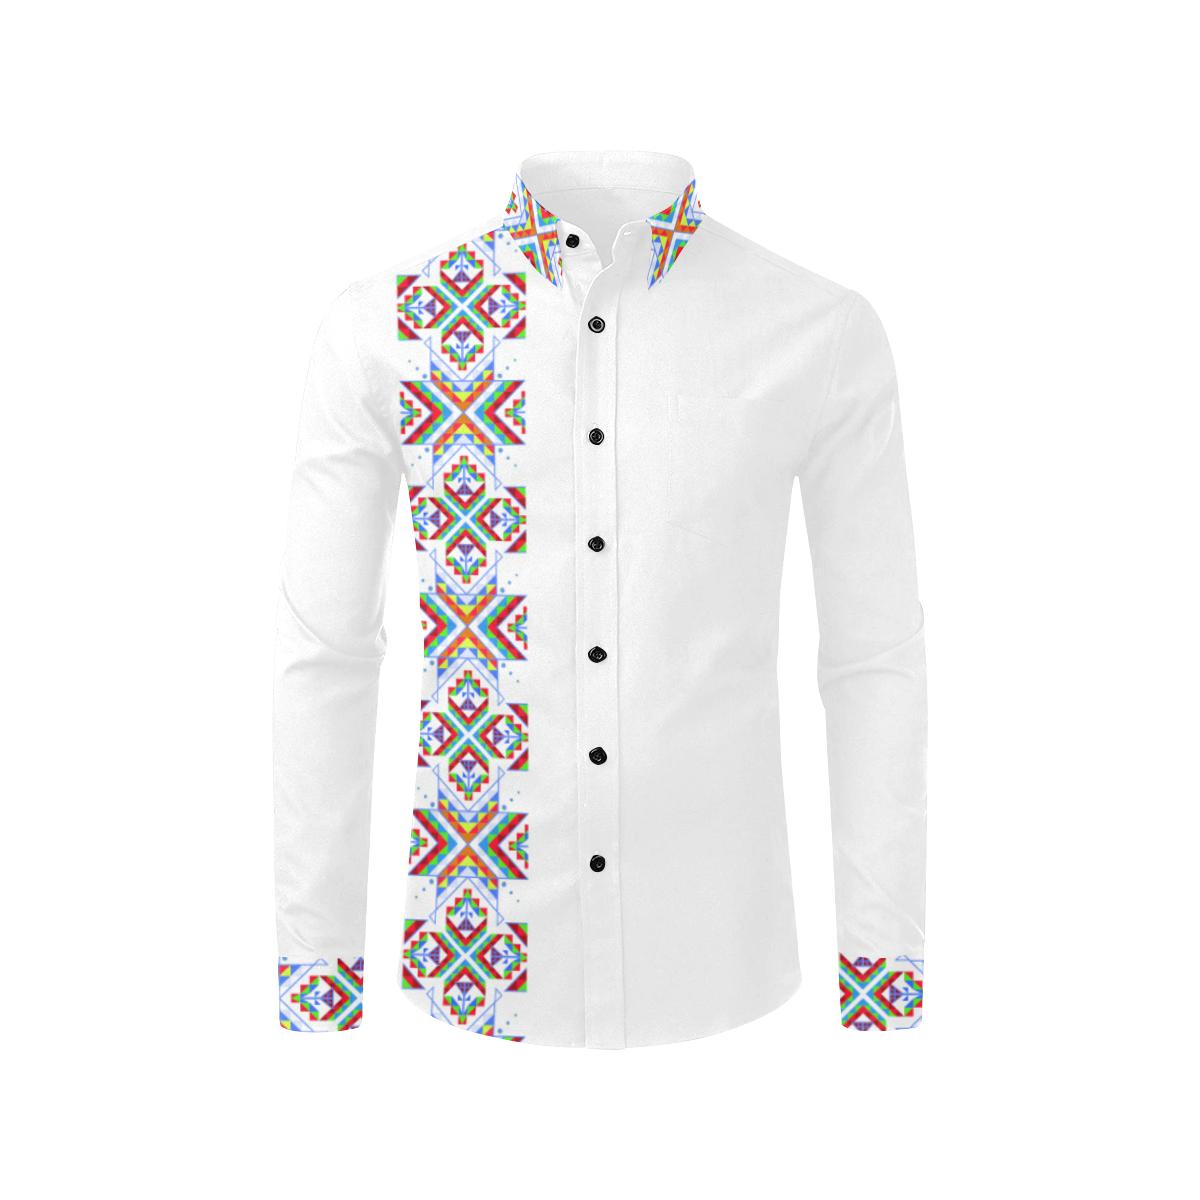 White Blanket Strip on White Men's All Over Print Casual Dress Shirt (Model T61) Men's Dress Shirt (T61) e-joyer 